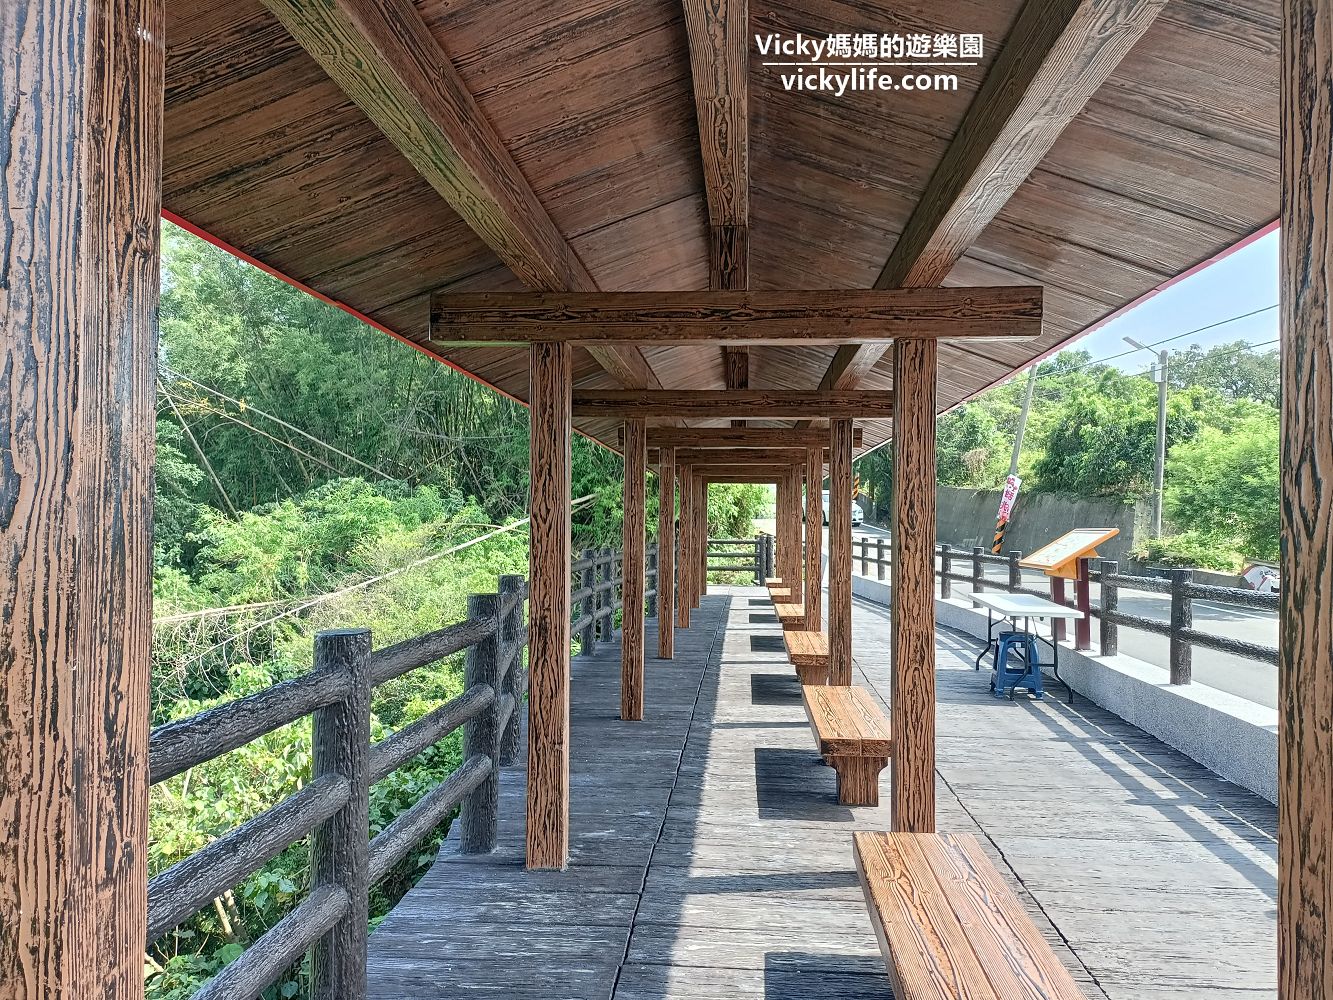 台南旅遊︱台南景點︱龍崎 龍船窩觀日亭：這裡風景好好啊！還有涼風徐徐，想健行可搭配五間步道